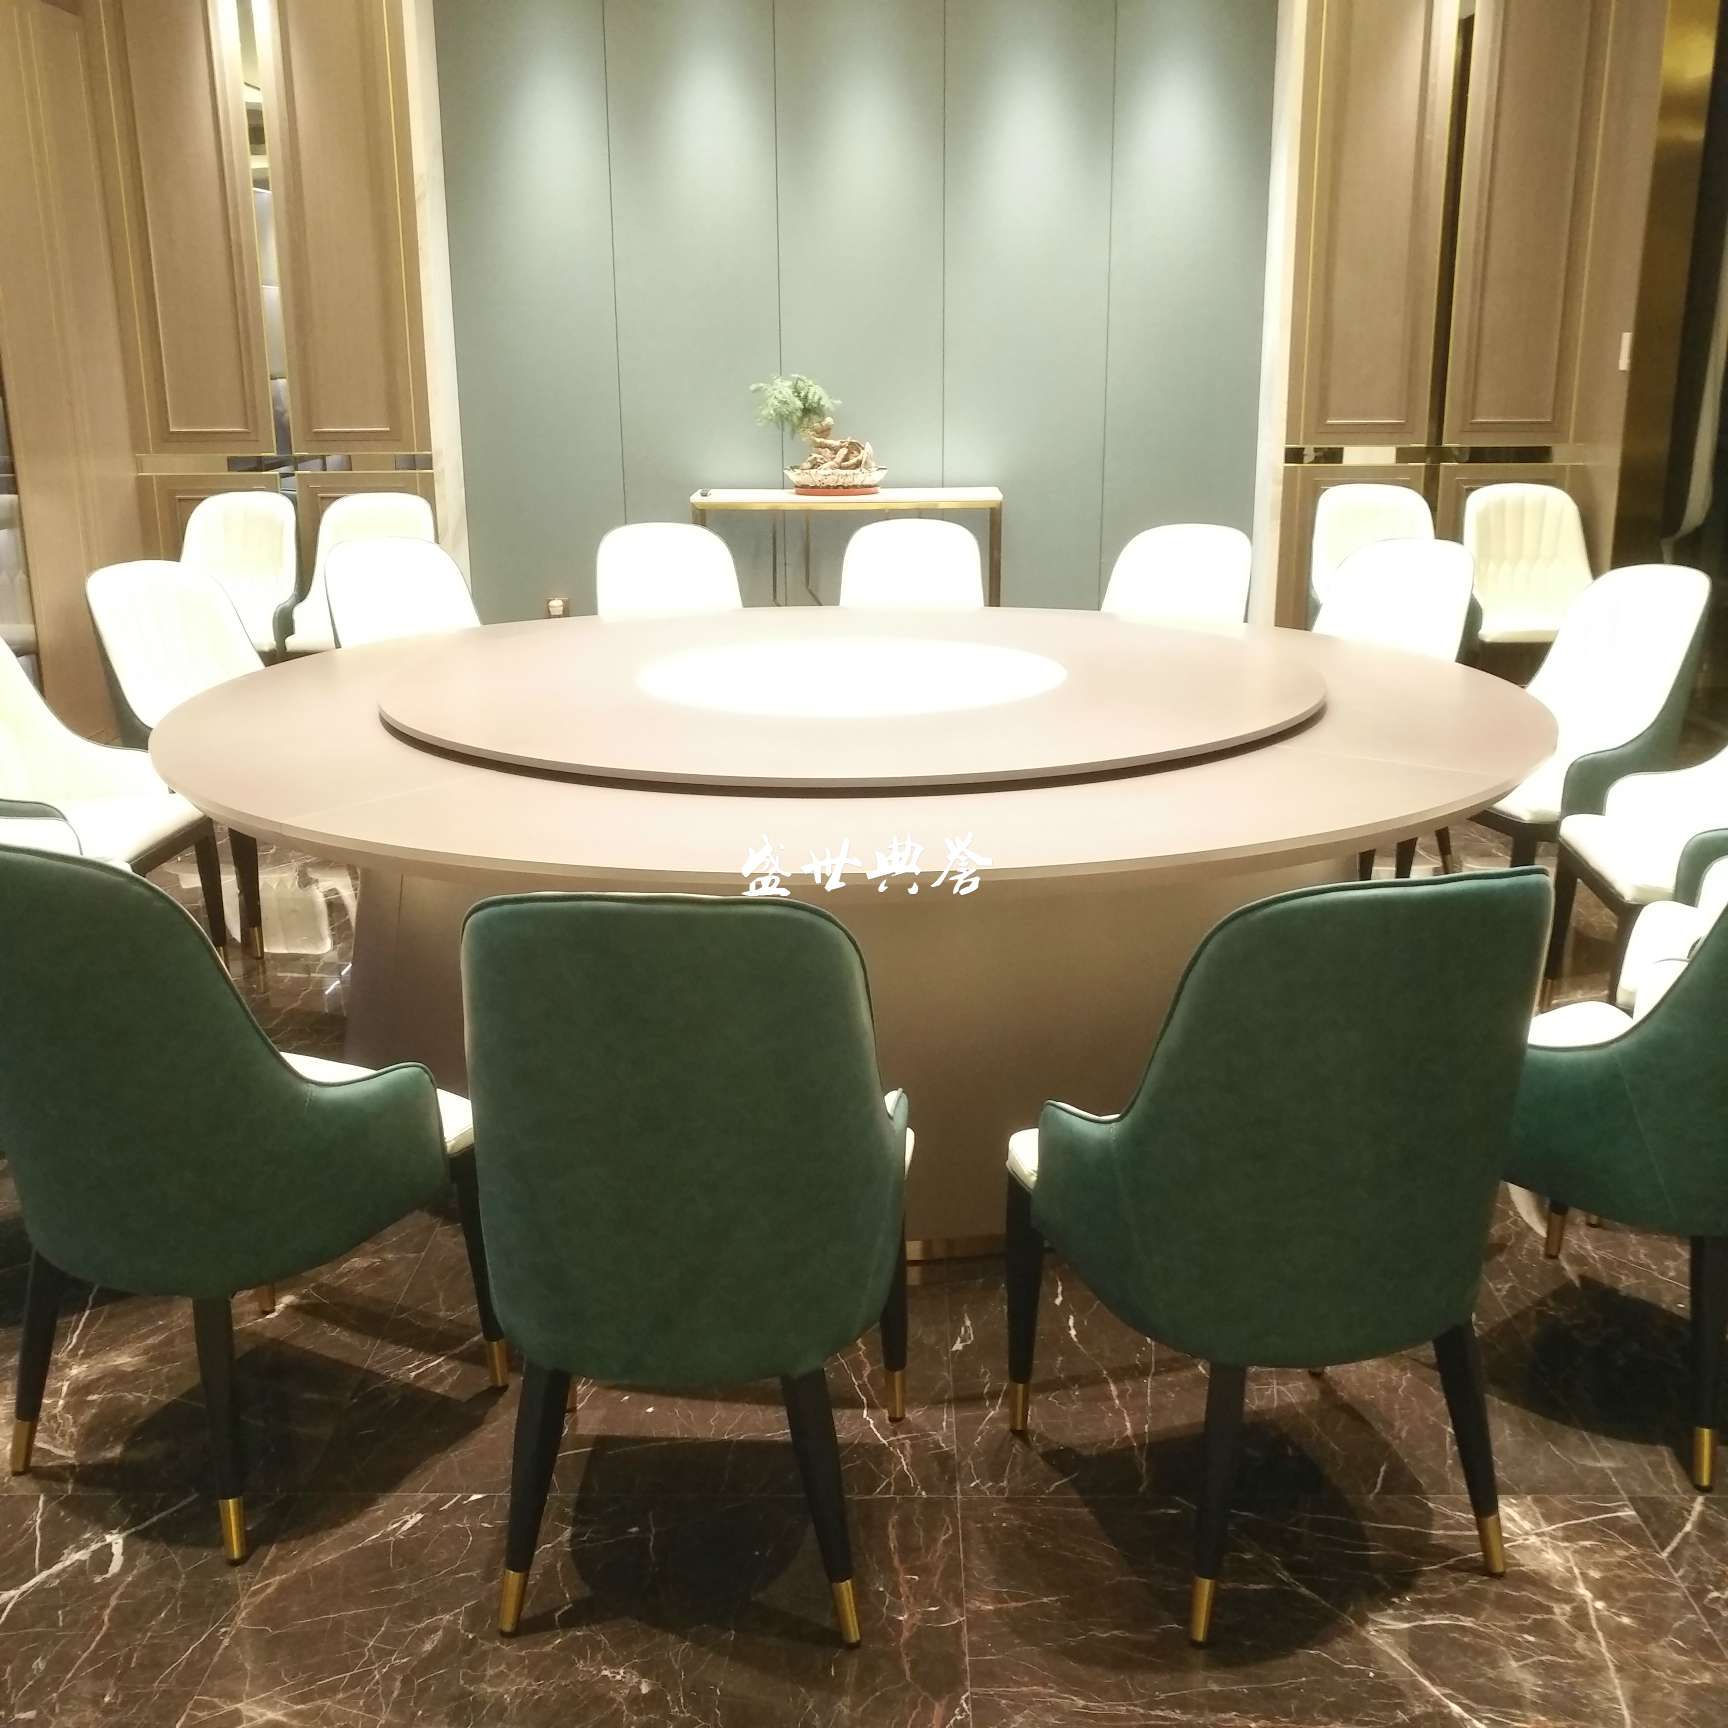 佛山酒店包厢餐椅厂家直销 新款北欧现代椅子 海鲜餐厅桌椅 餐厅网红轻奢菠萝椅